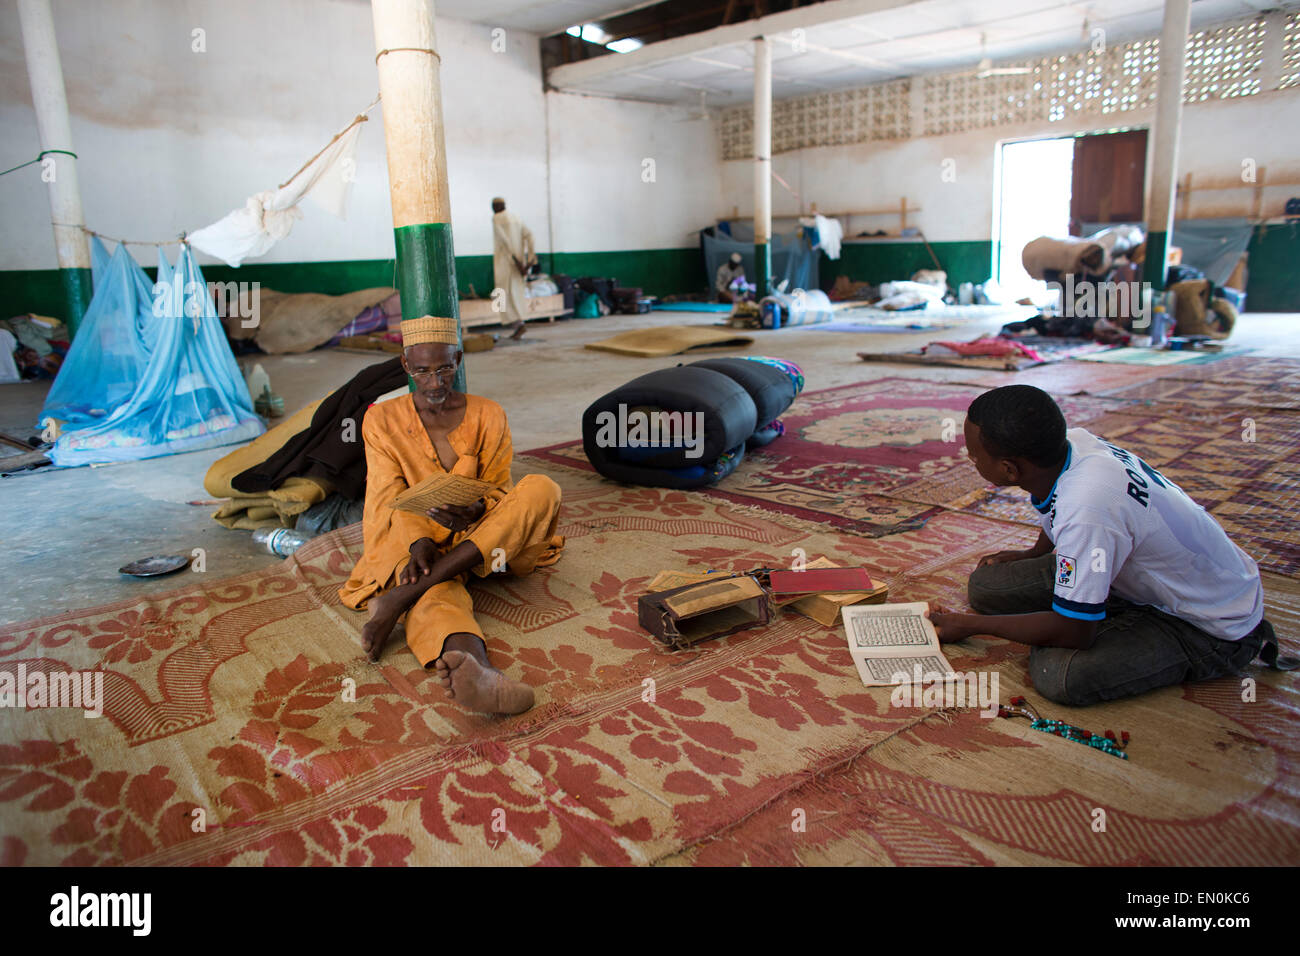 Muslimische Männer wurden von Gewalt in der Zentralafrikanischen Republik vertrieben. Sie fanden Zuflucht in und rund um die Moschee. Stockfoto